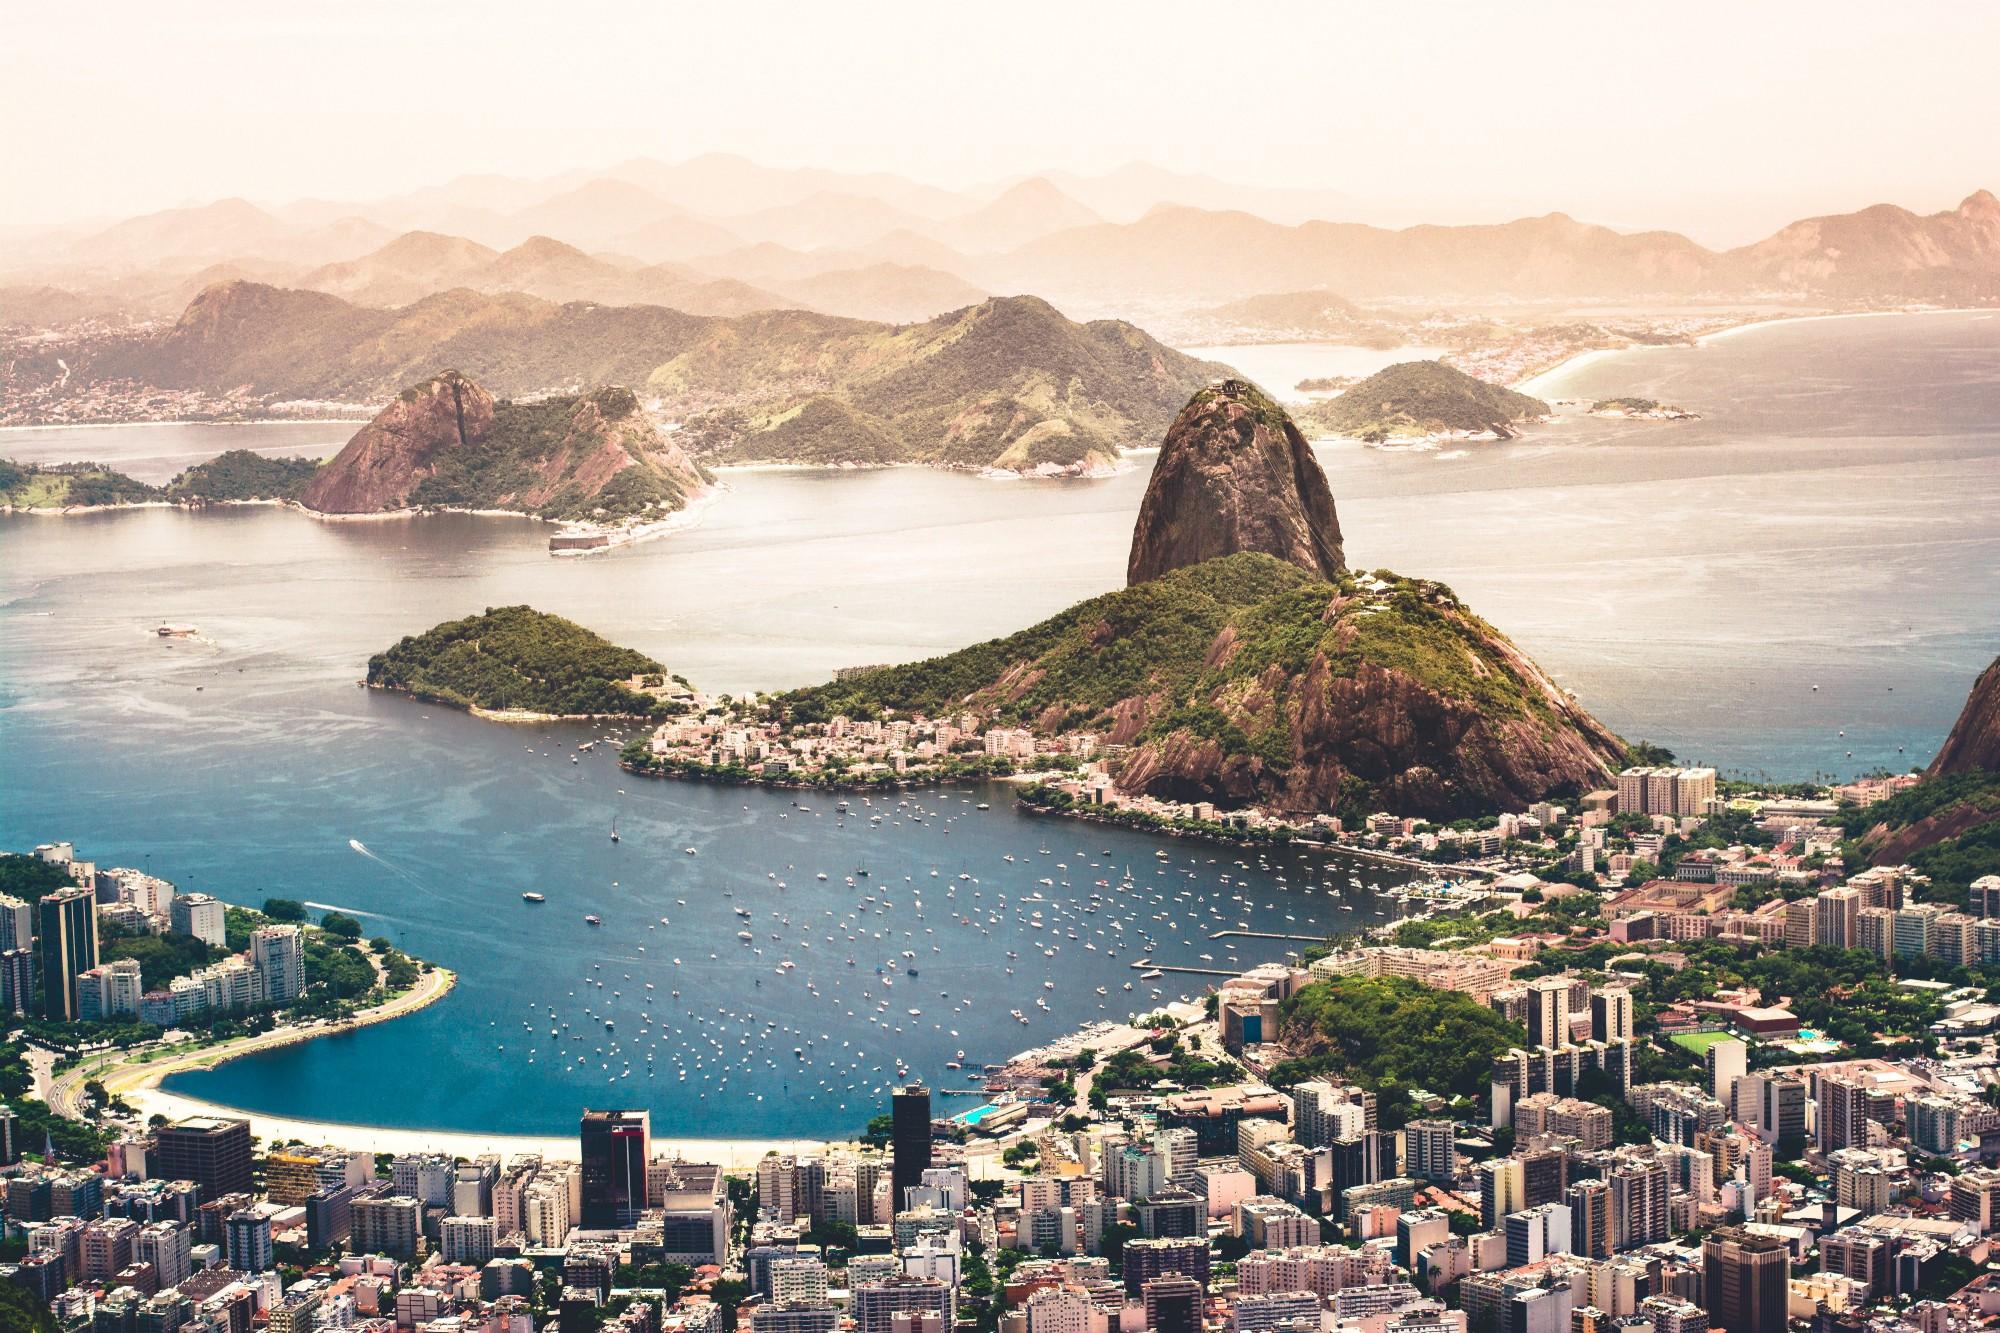 Rio de Janeiro’ya, City of God’la bakmak